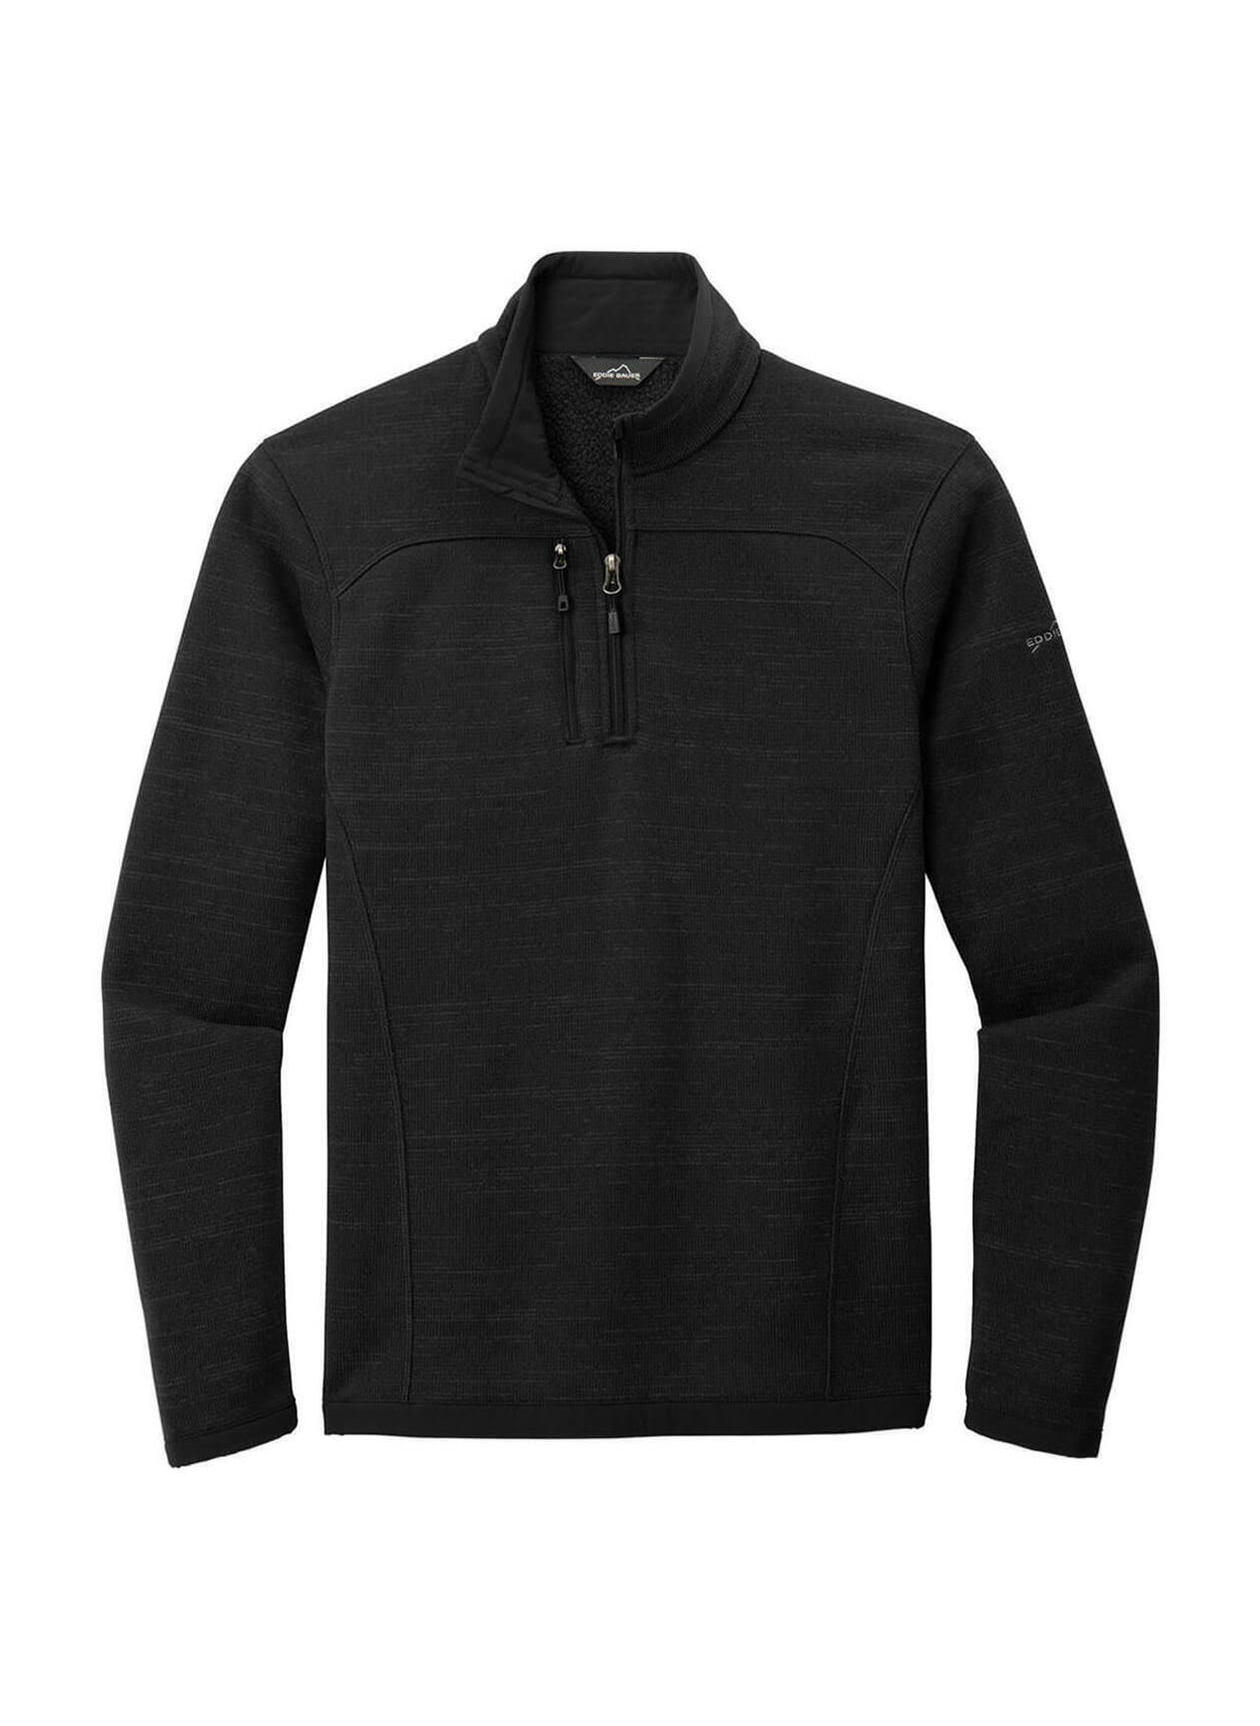 Eddie Bauer Men's Black Sweater Fleece Quarter-Zip